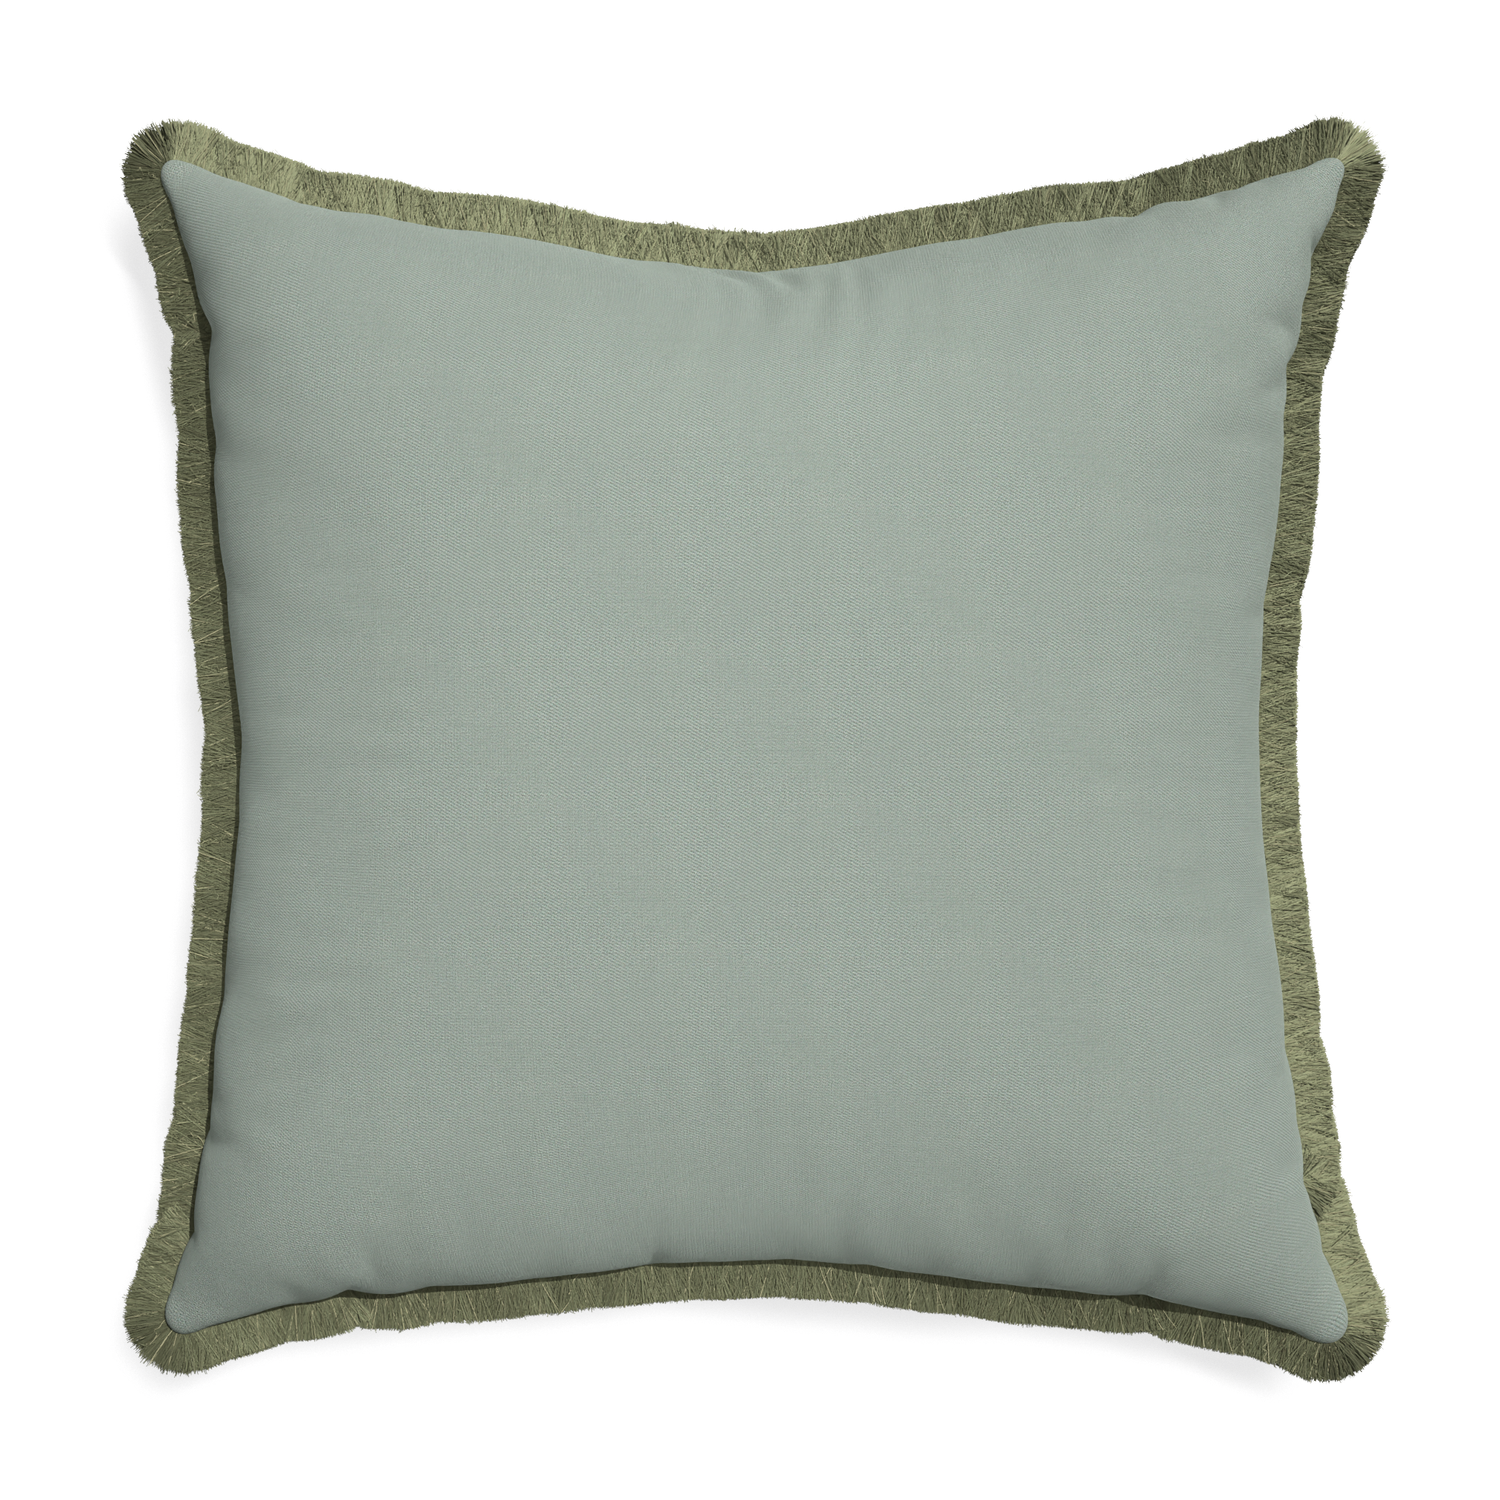 Euro-sham sage custom pillow with sage fringe on white background